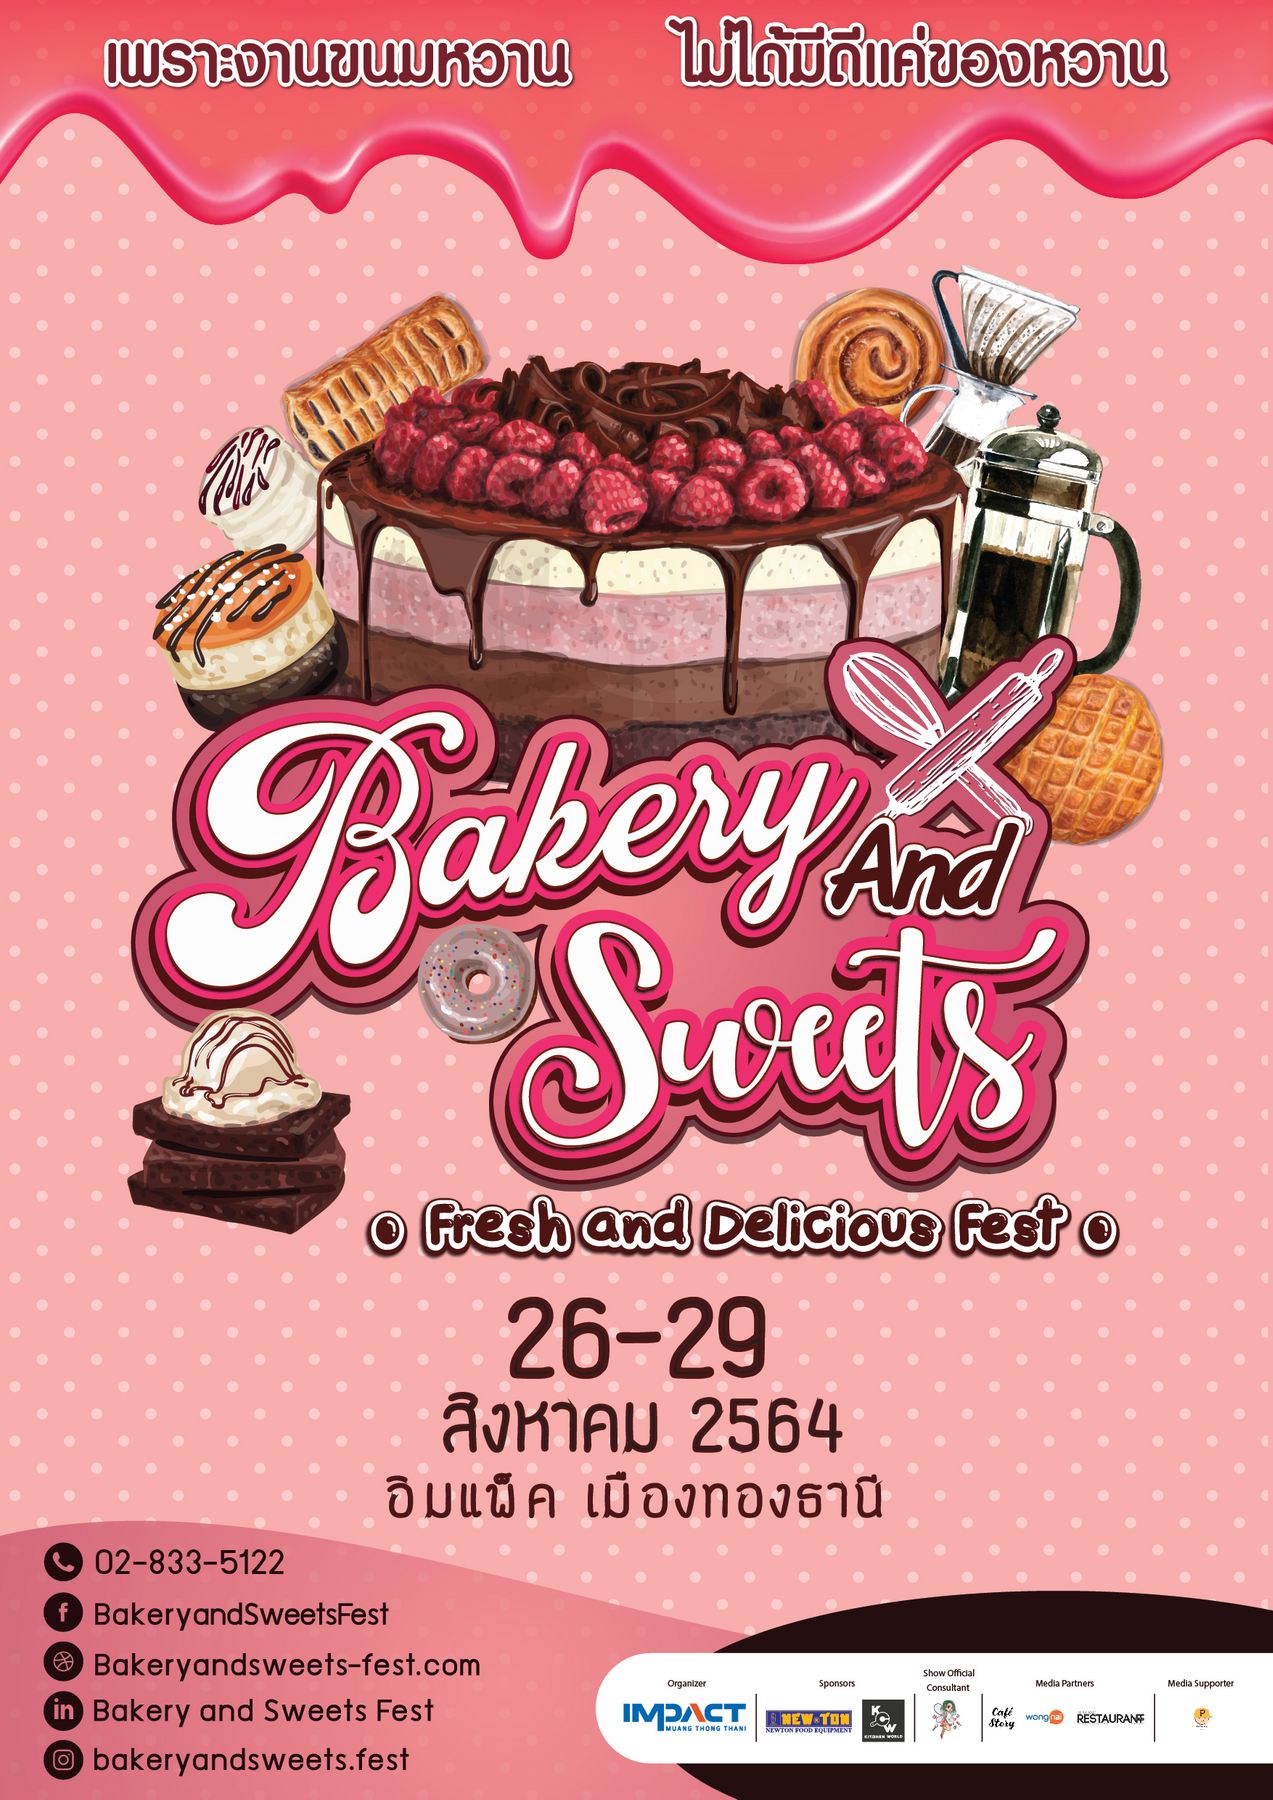 Bakery & Sweets Fest 2021 เพราะงานขนมหวาน ไม่ได้มีดีแค่ของหวาน